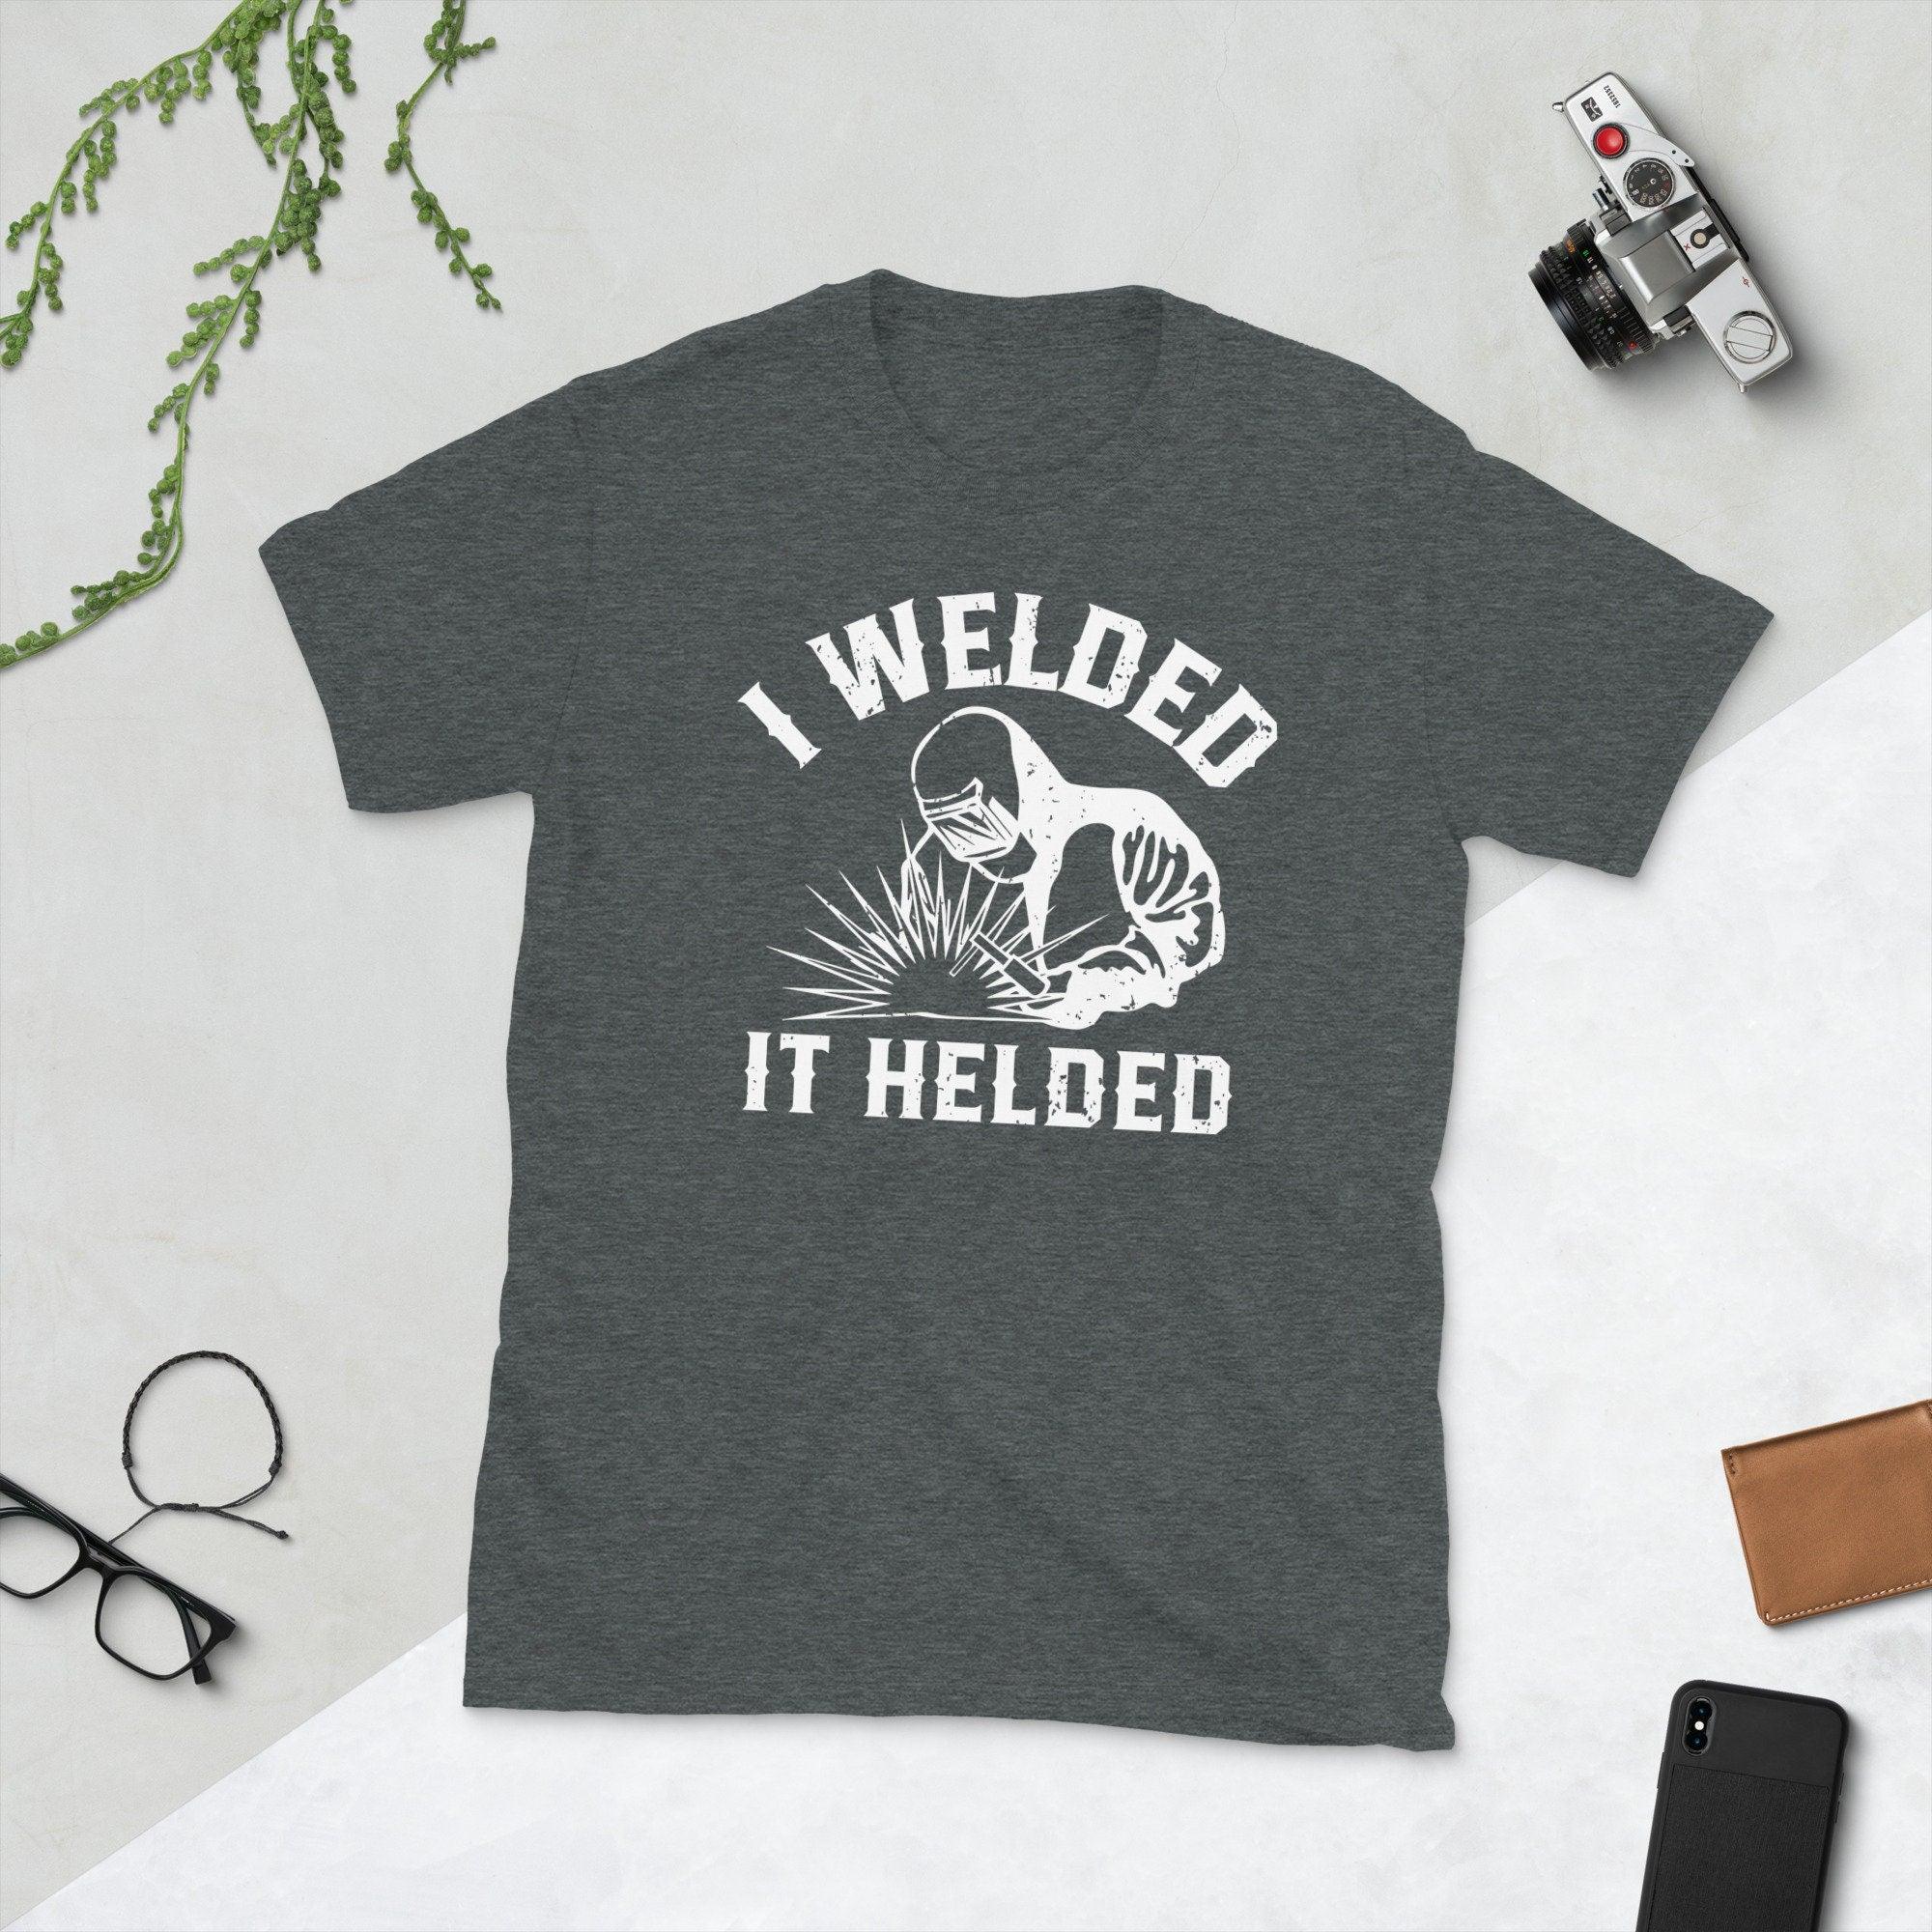 I Welded It Helded, унісекс-футболка Welder, весела футболка Welder Welding у подарунок із ретро-зварювальним силуетом - plusminusco.com